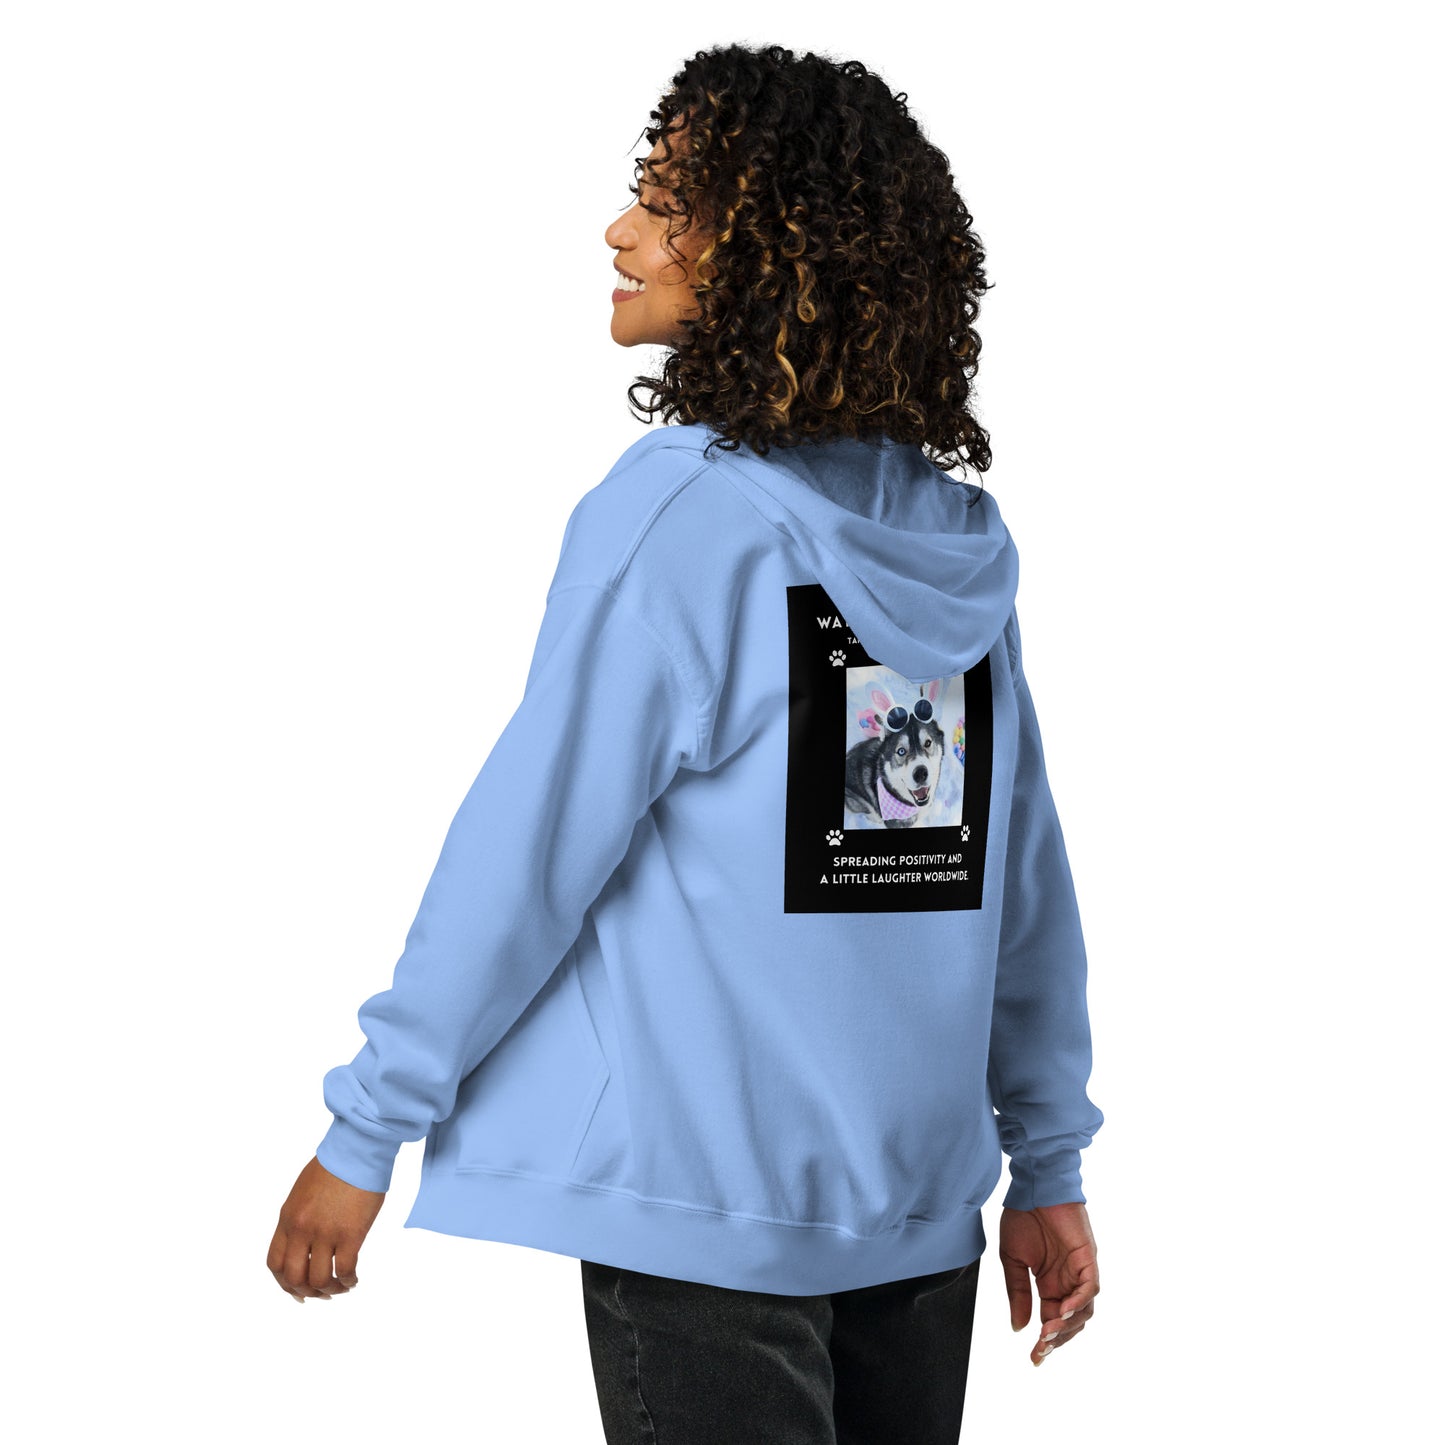 Unisex heavy blend zip hoodie- Wayah's Got the Wiggles